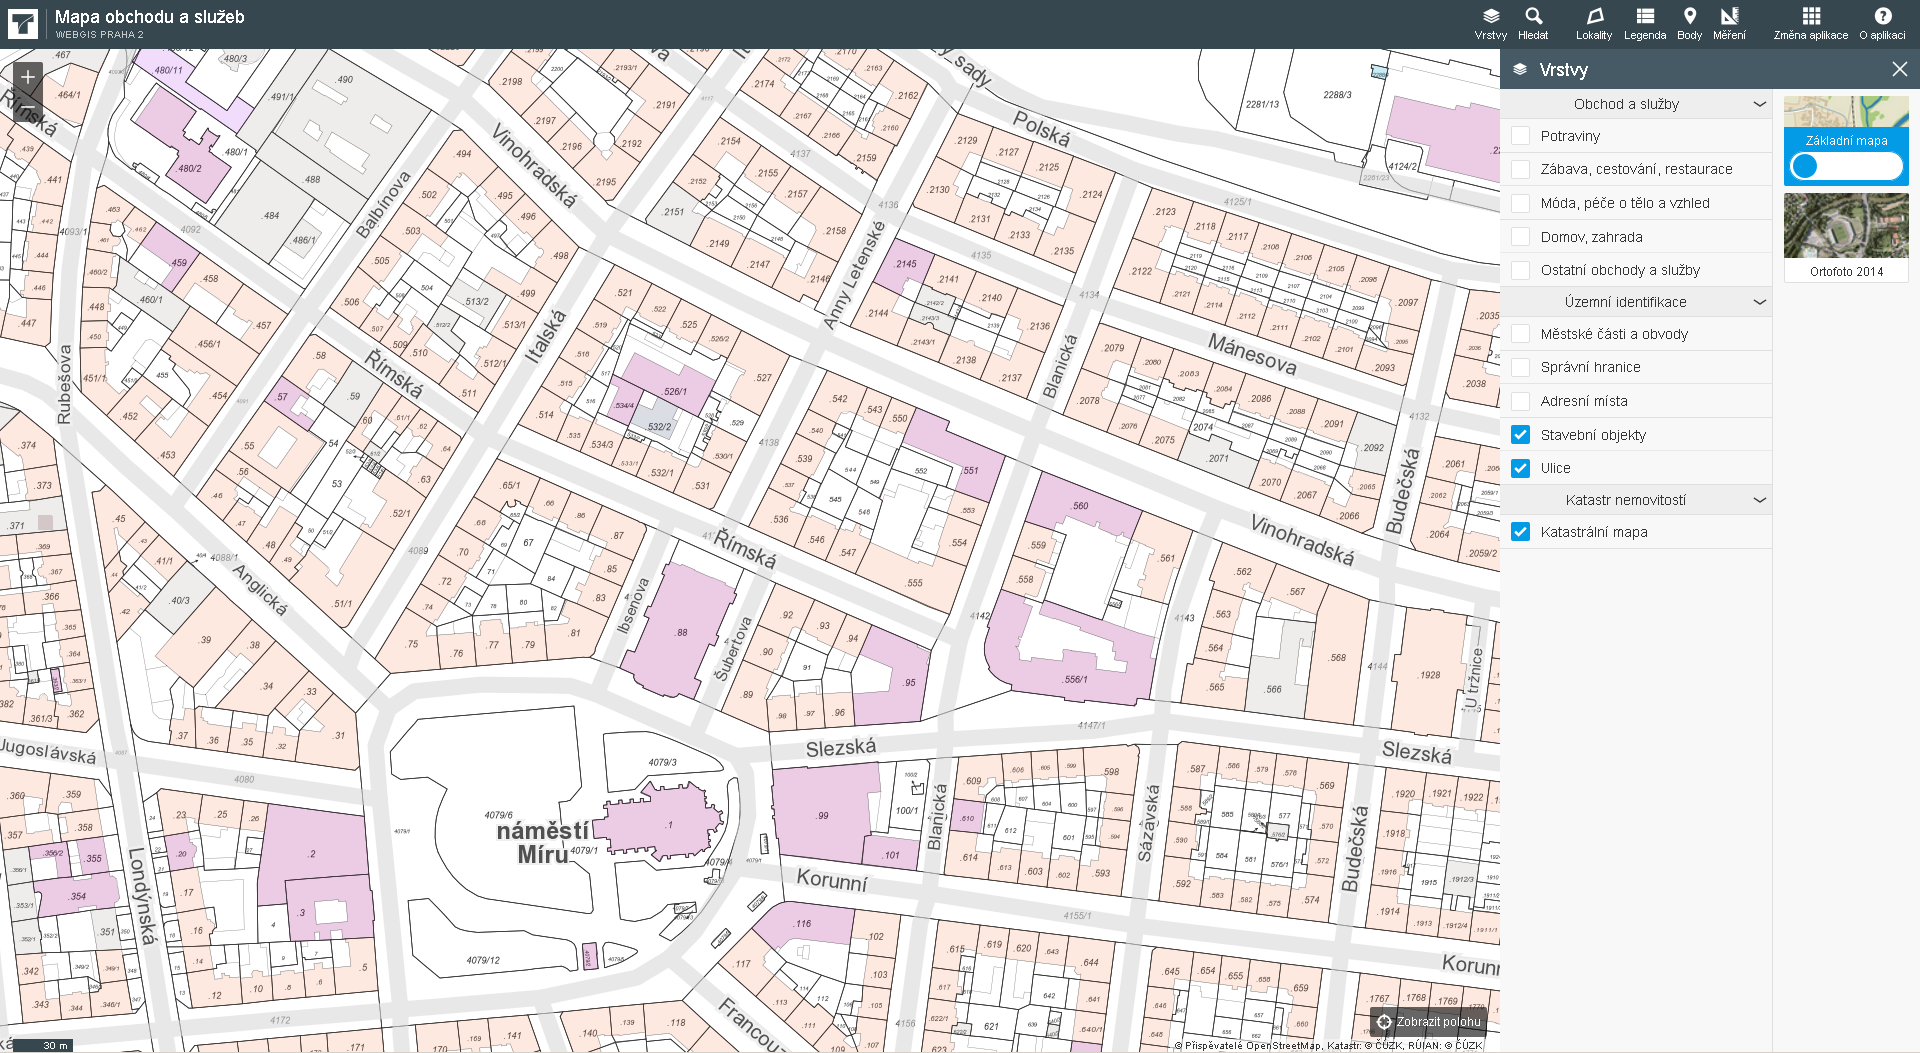 PODKLADOVÉ MAPY A VRSTVY hybridní mapa s podkladem stavebních objektů a uliční sítí + katastrální mapa - hybridní mapa je se svou vizualizací